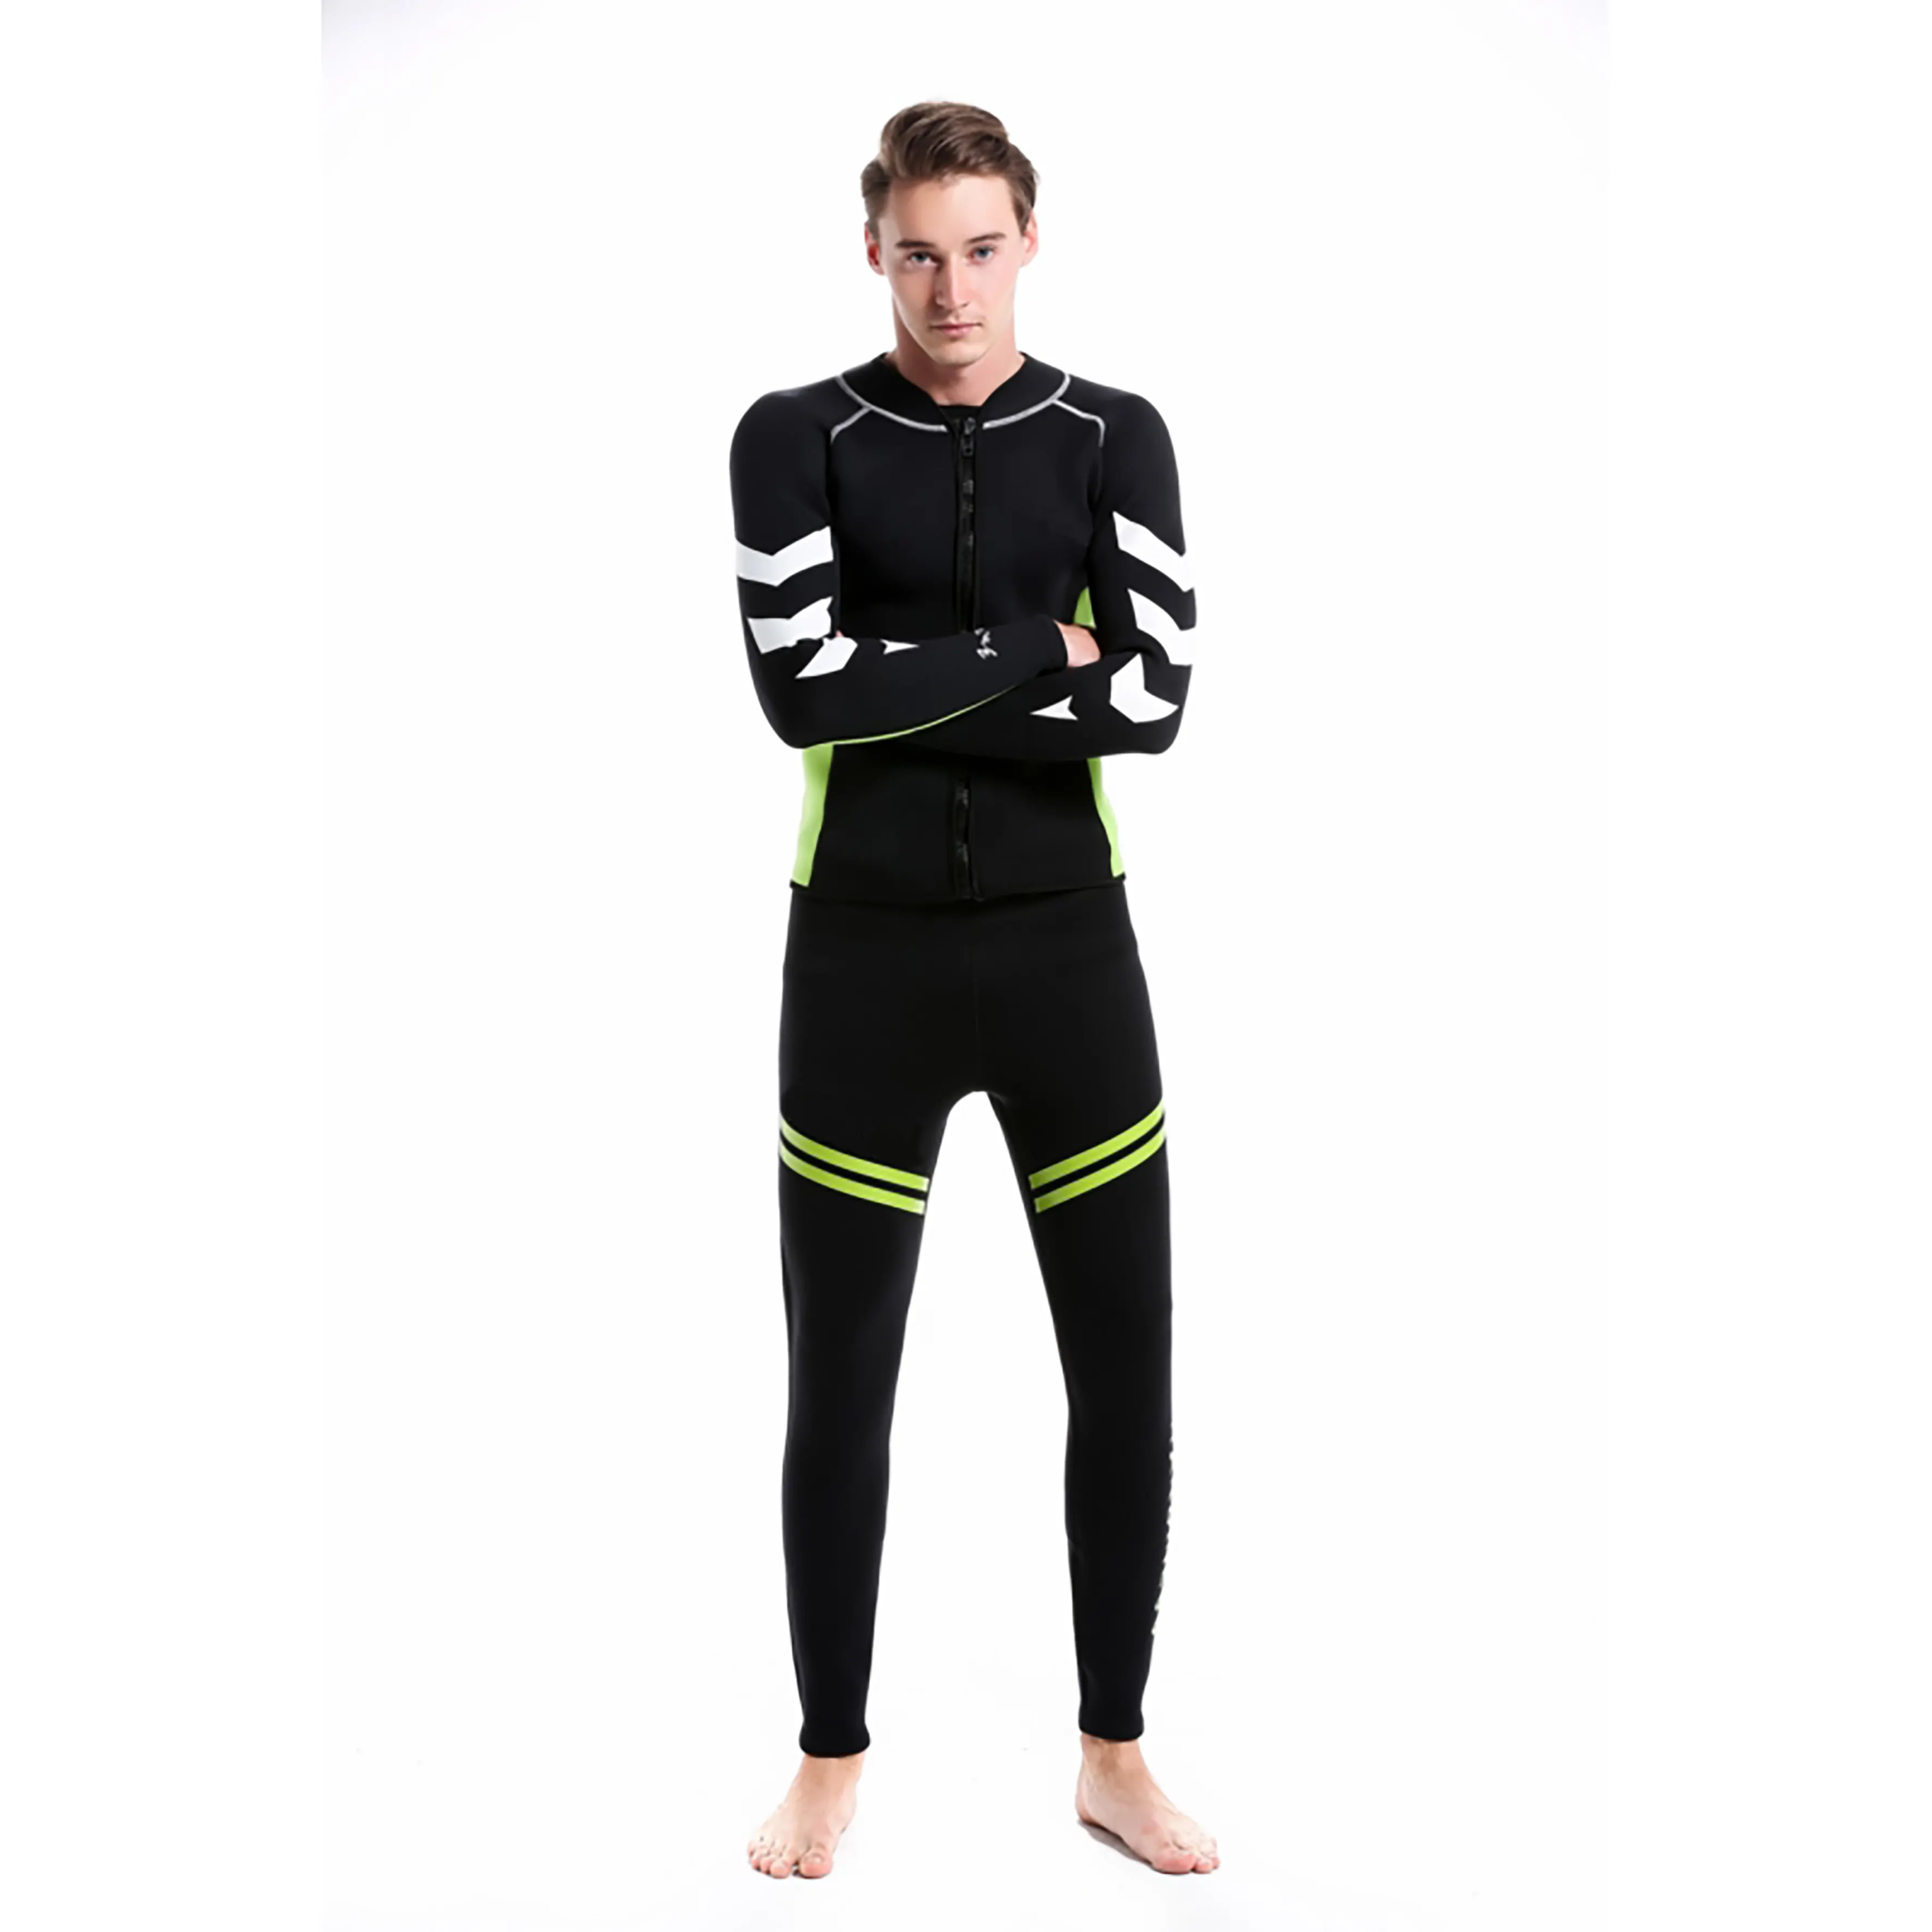 1.5Mm昇華プリント薄い全身スーツ男性用ダイビングスキューバネオプレンツーピースジパーレス水泳ウェットスーツ